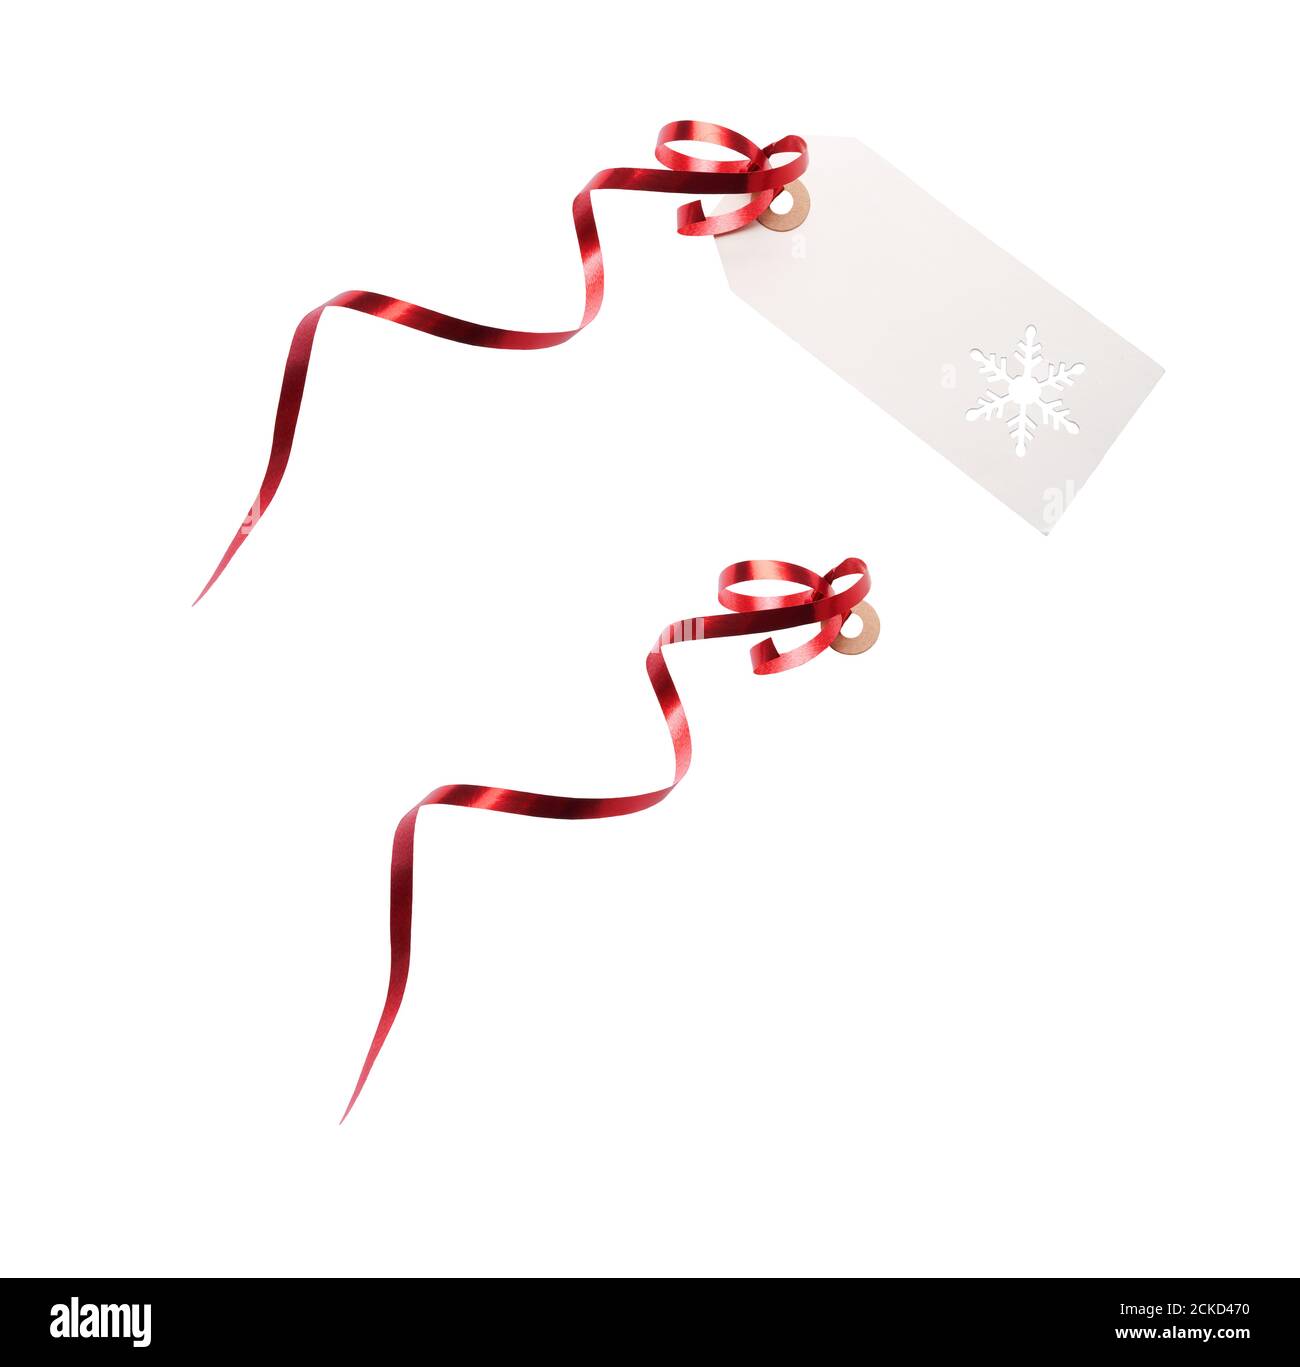 Étiquettes cadeau et modèle d'étiquette avec ruban rouge attaché pour ajouter à des cadeaux, cadeaux de Noël ou d'anniversaire isolés sur un fond blanc. Banque D'Images